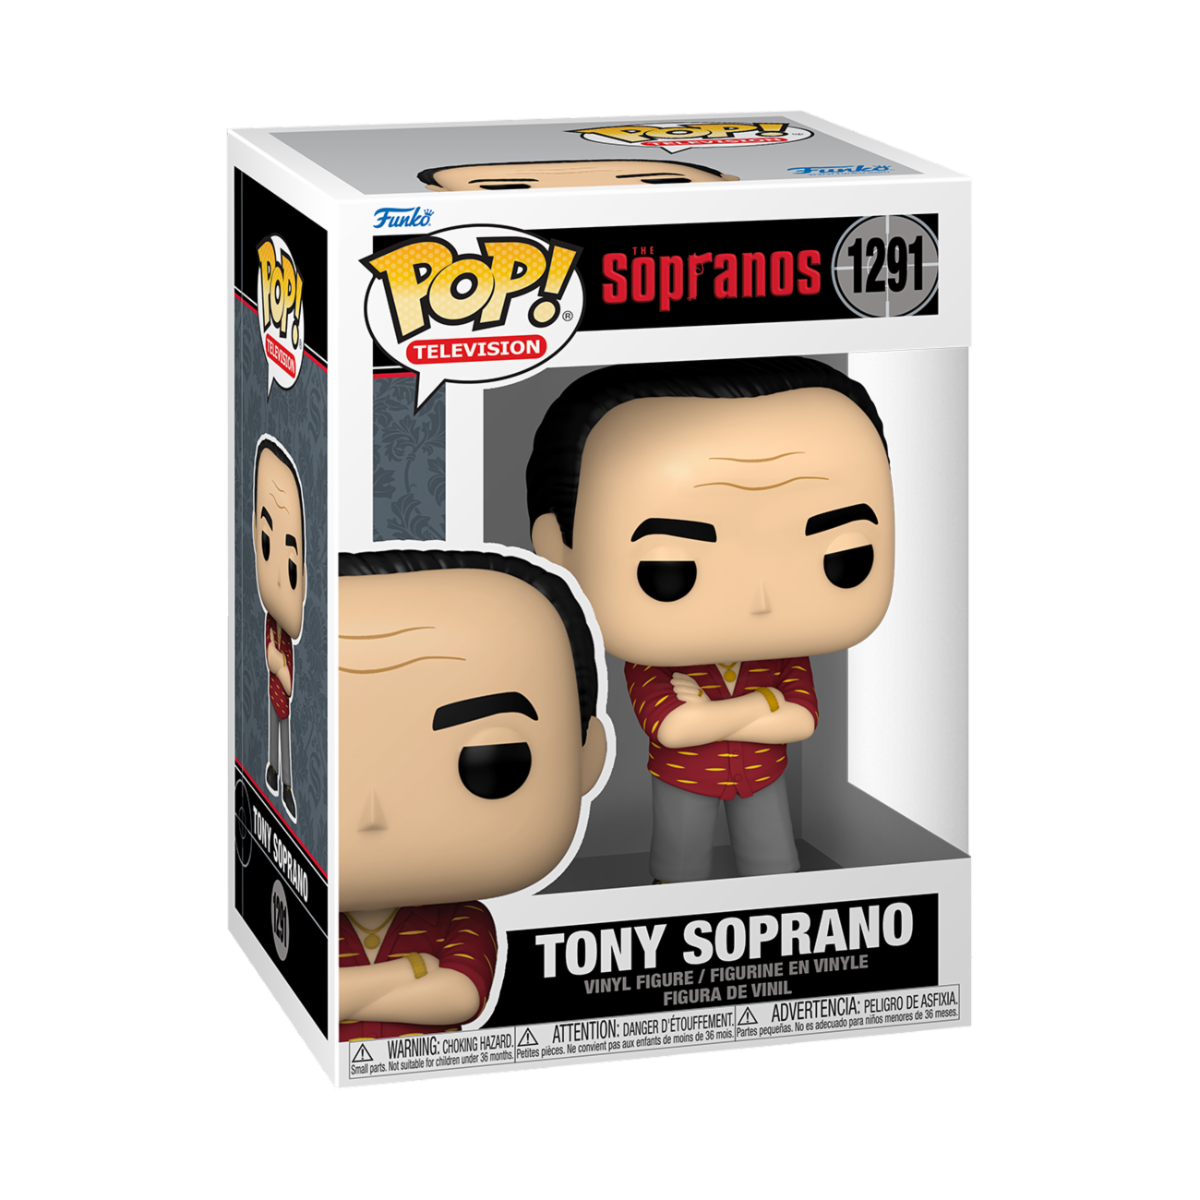 The Sopranos - Tony Soprano (1291)